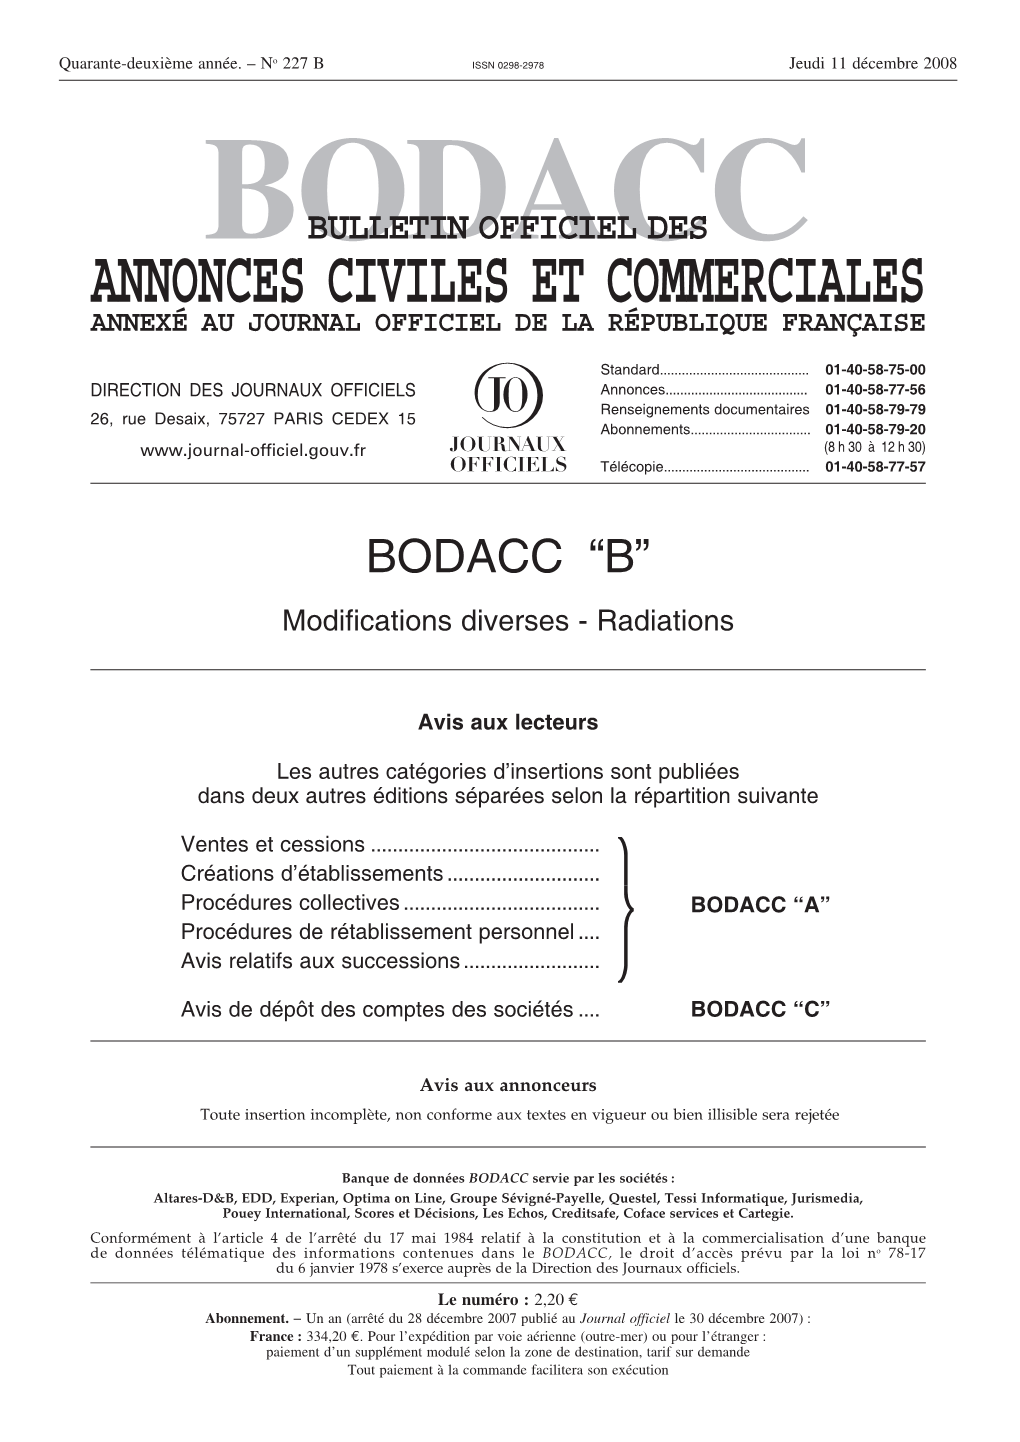 BODACC-B 20080227 0001 P000.Pdf